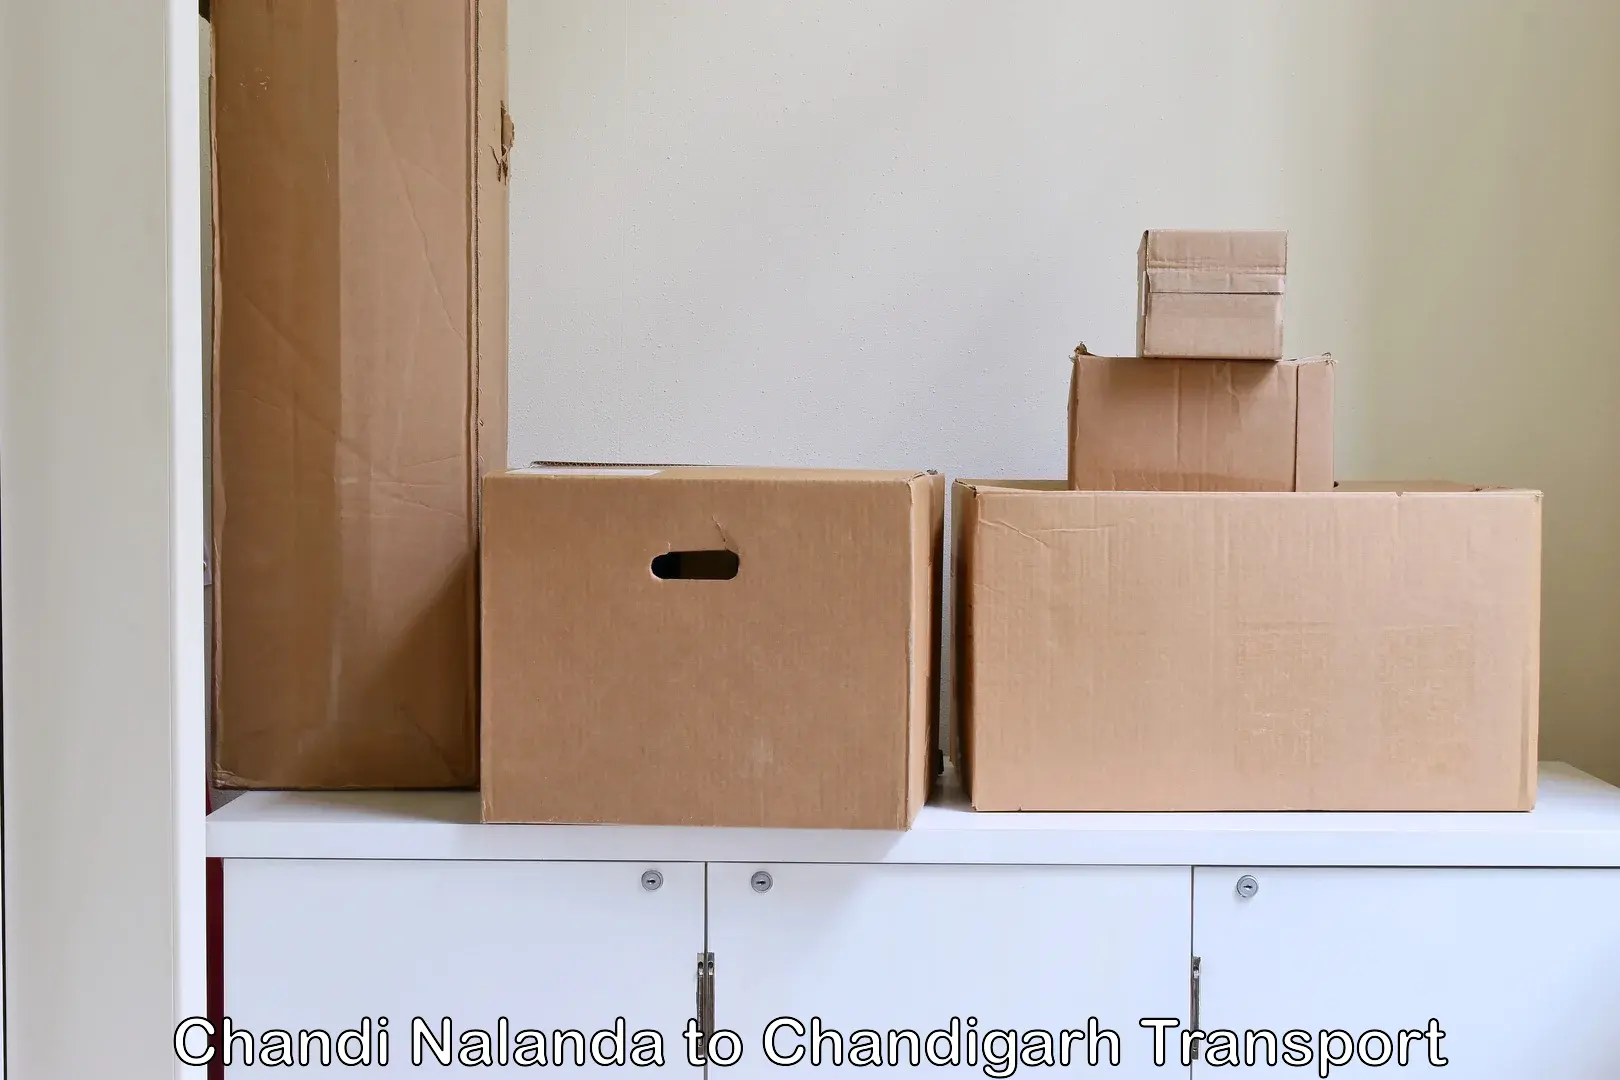 Shipping partner Chandi Nalanda to Chandigarh